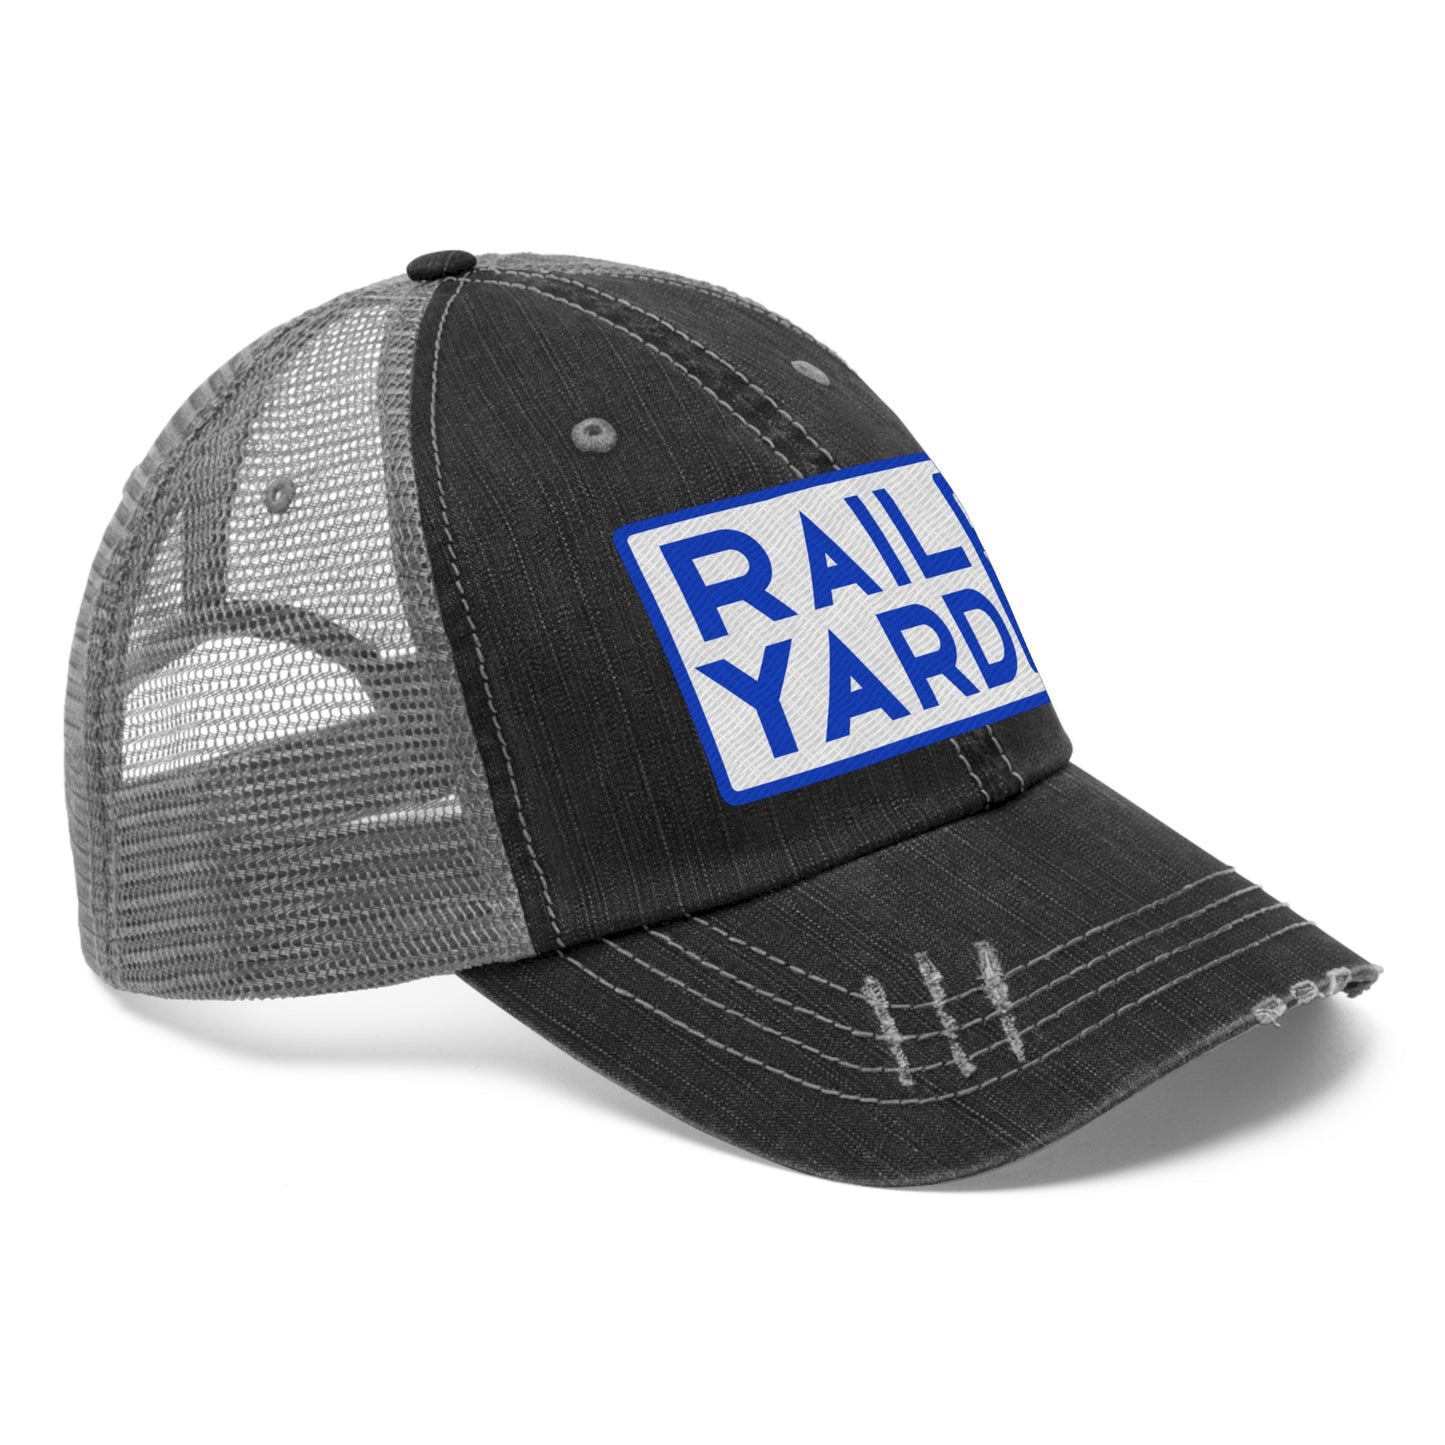 Railyard FVL - Unisex Trucker Hat